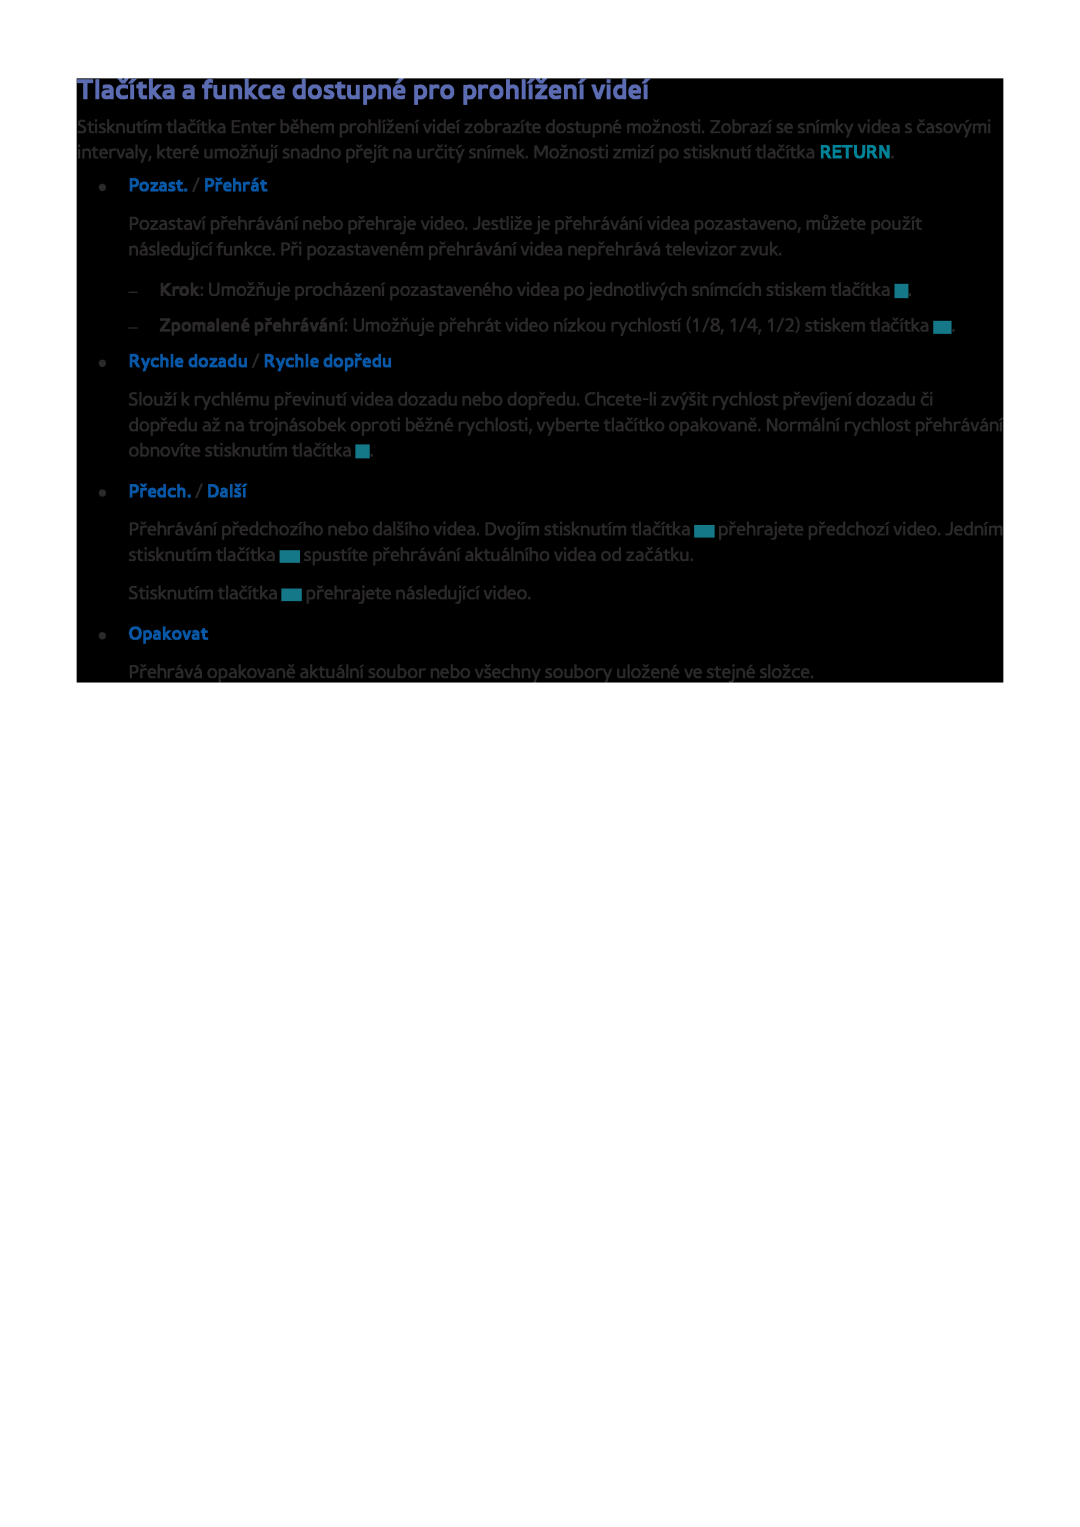 Samsung UE48J5510AWXZF manual Tlačítka a funkce dostupné pro prohlížení videí, Rychle dozadu / Rychle dopředu, Opakovat 